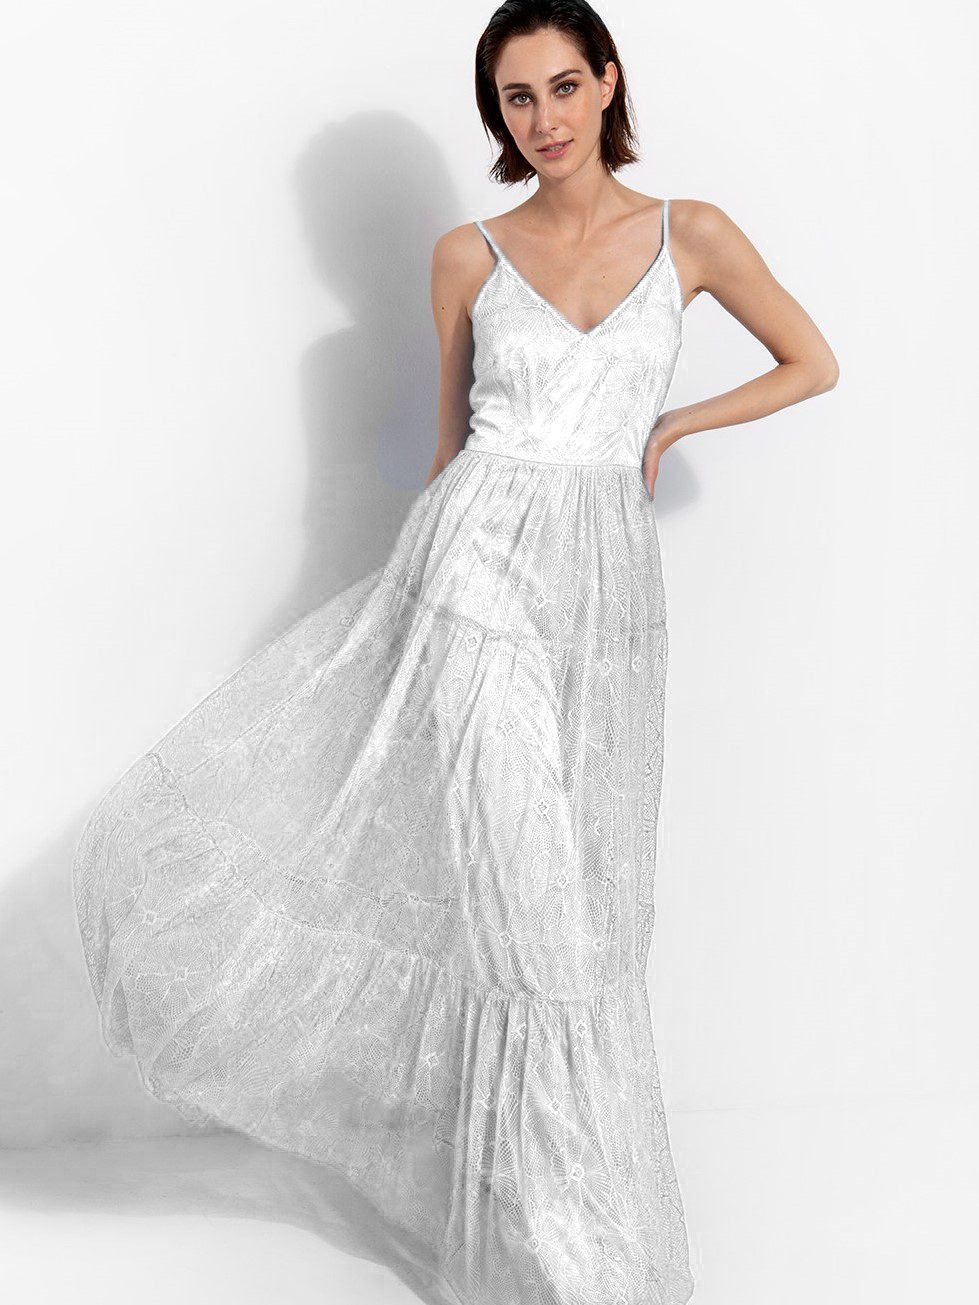 Ασπρο μακρύ φόρεμα με δαντέλα, ιδανικο και για νυφικό φόρεμα για πολιτικό γάμο